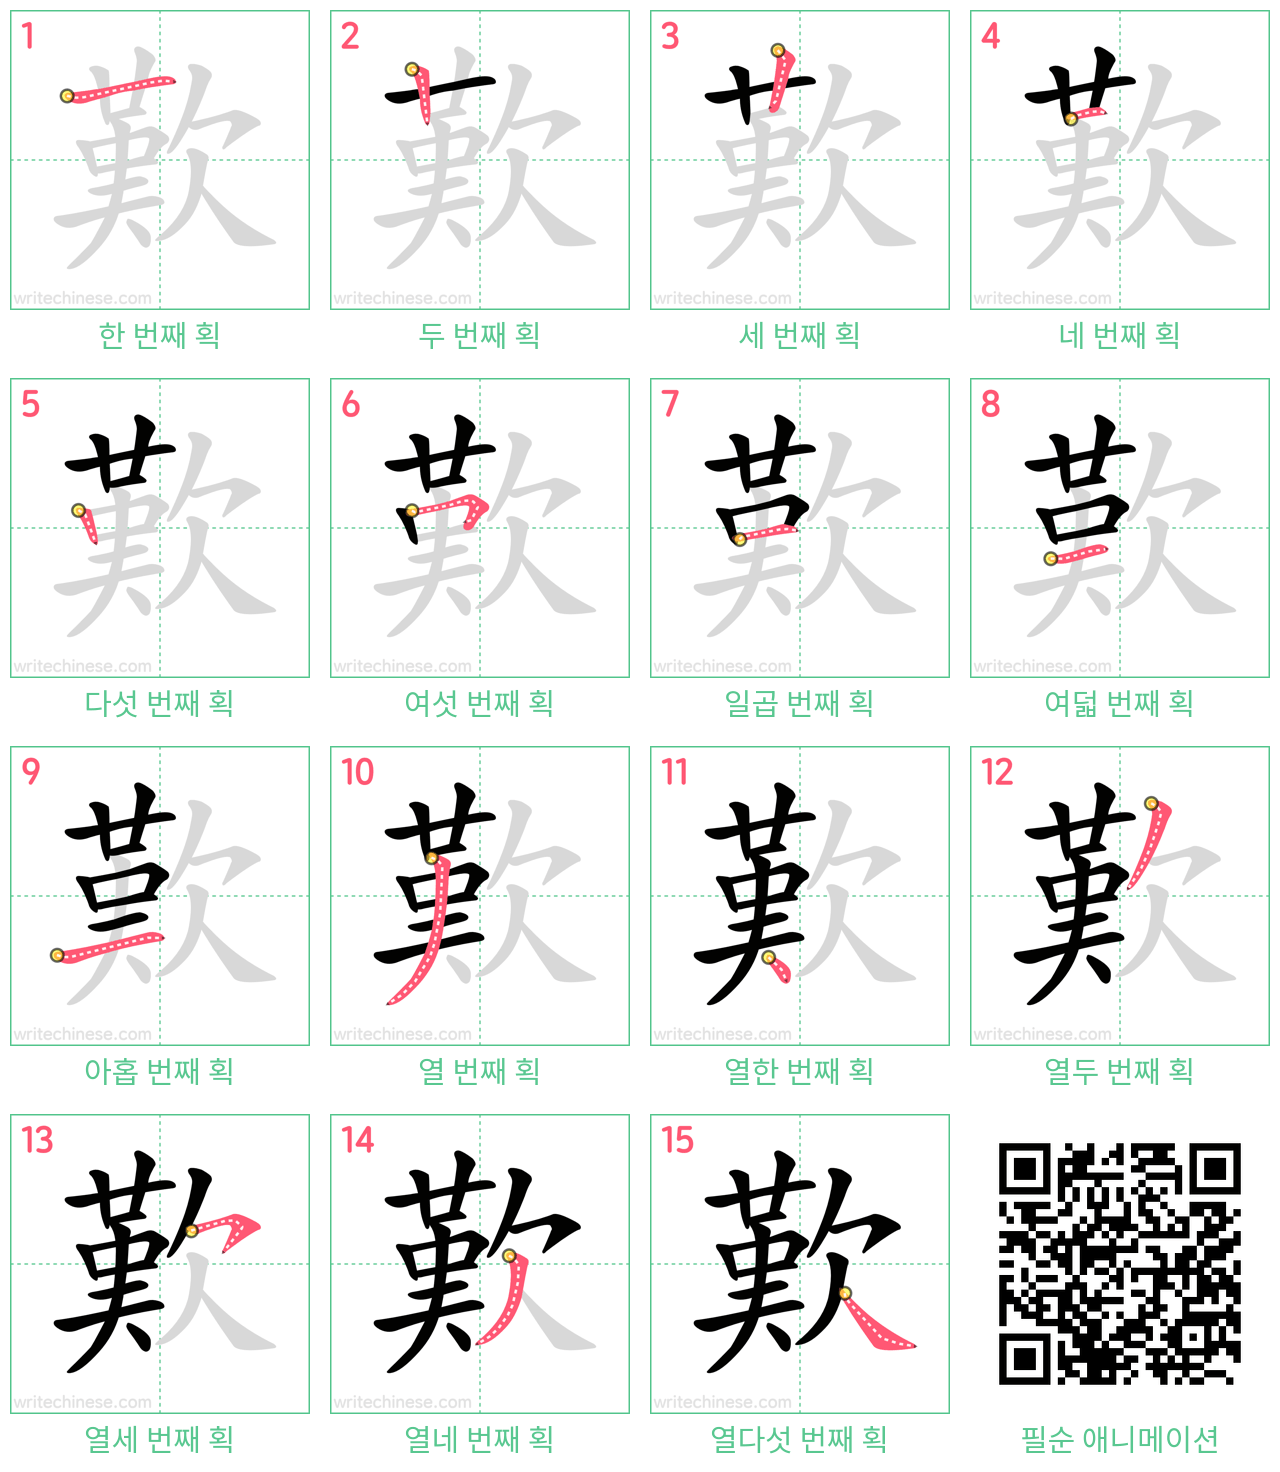 歎 step-by-step stroke order diagrams